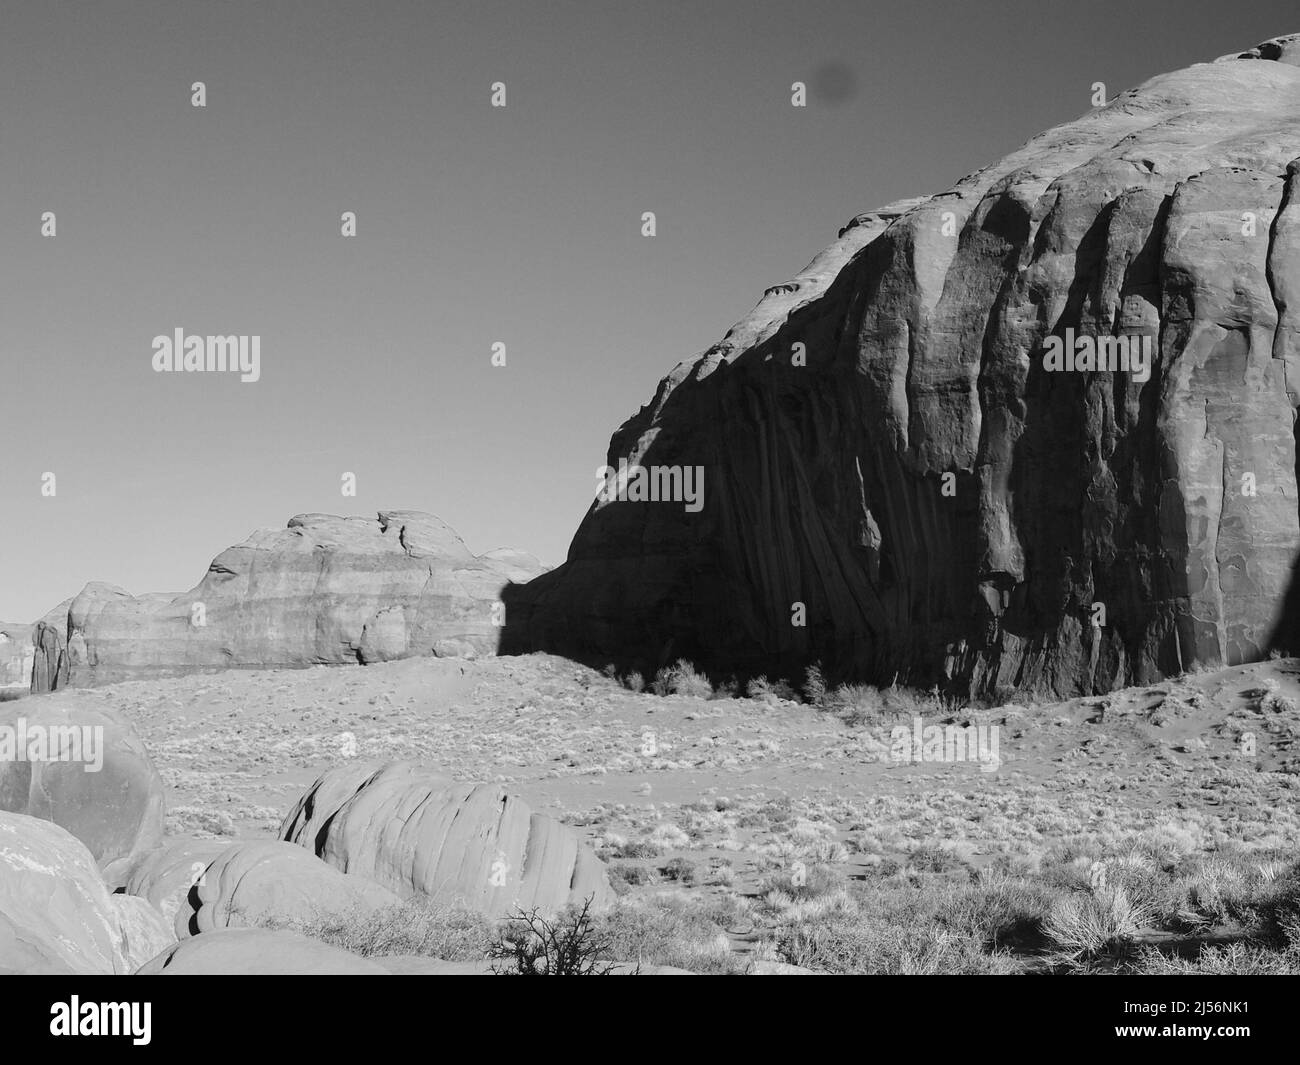 Monument Valley, Arizona dans la nation indienne Navajo près de l'angle nord-est de l'Utah, frontière de l'Arizona. Oljato - Monument Valley Banque D'Images